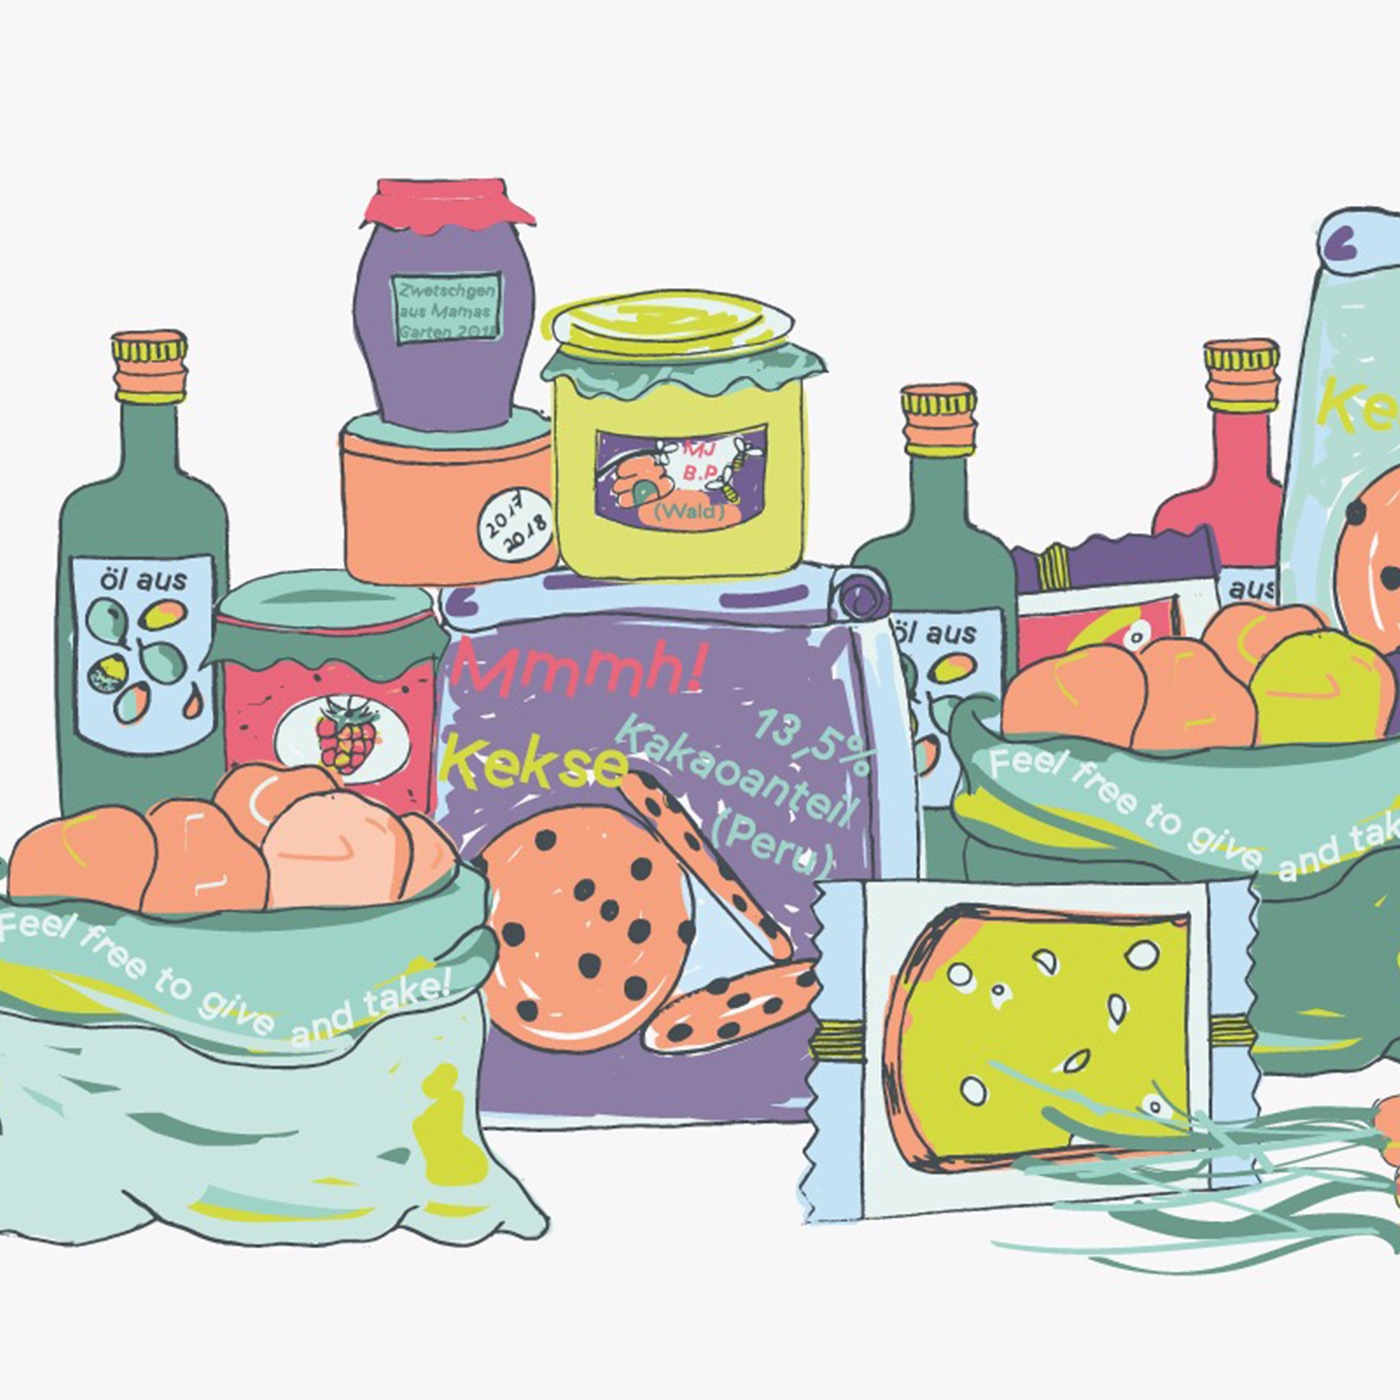 Offener Kühlschrank: Lebensmittel sind wertvoll